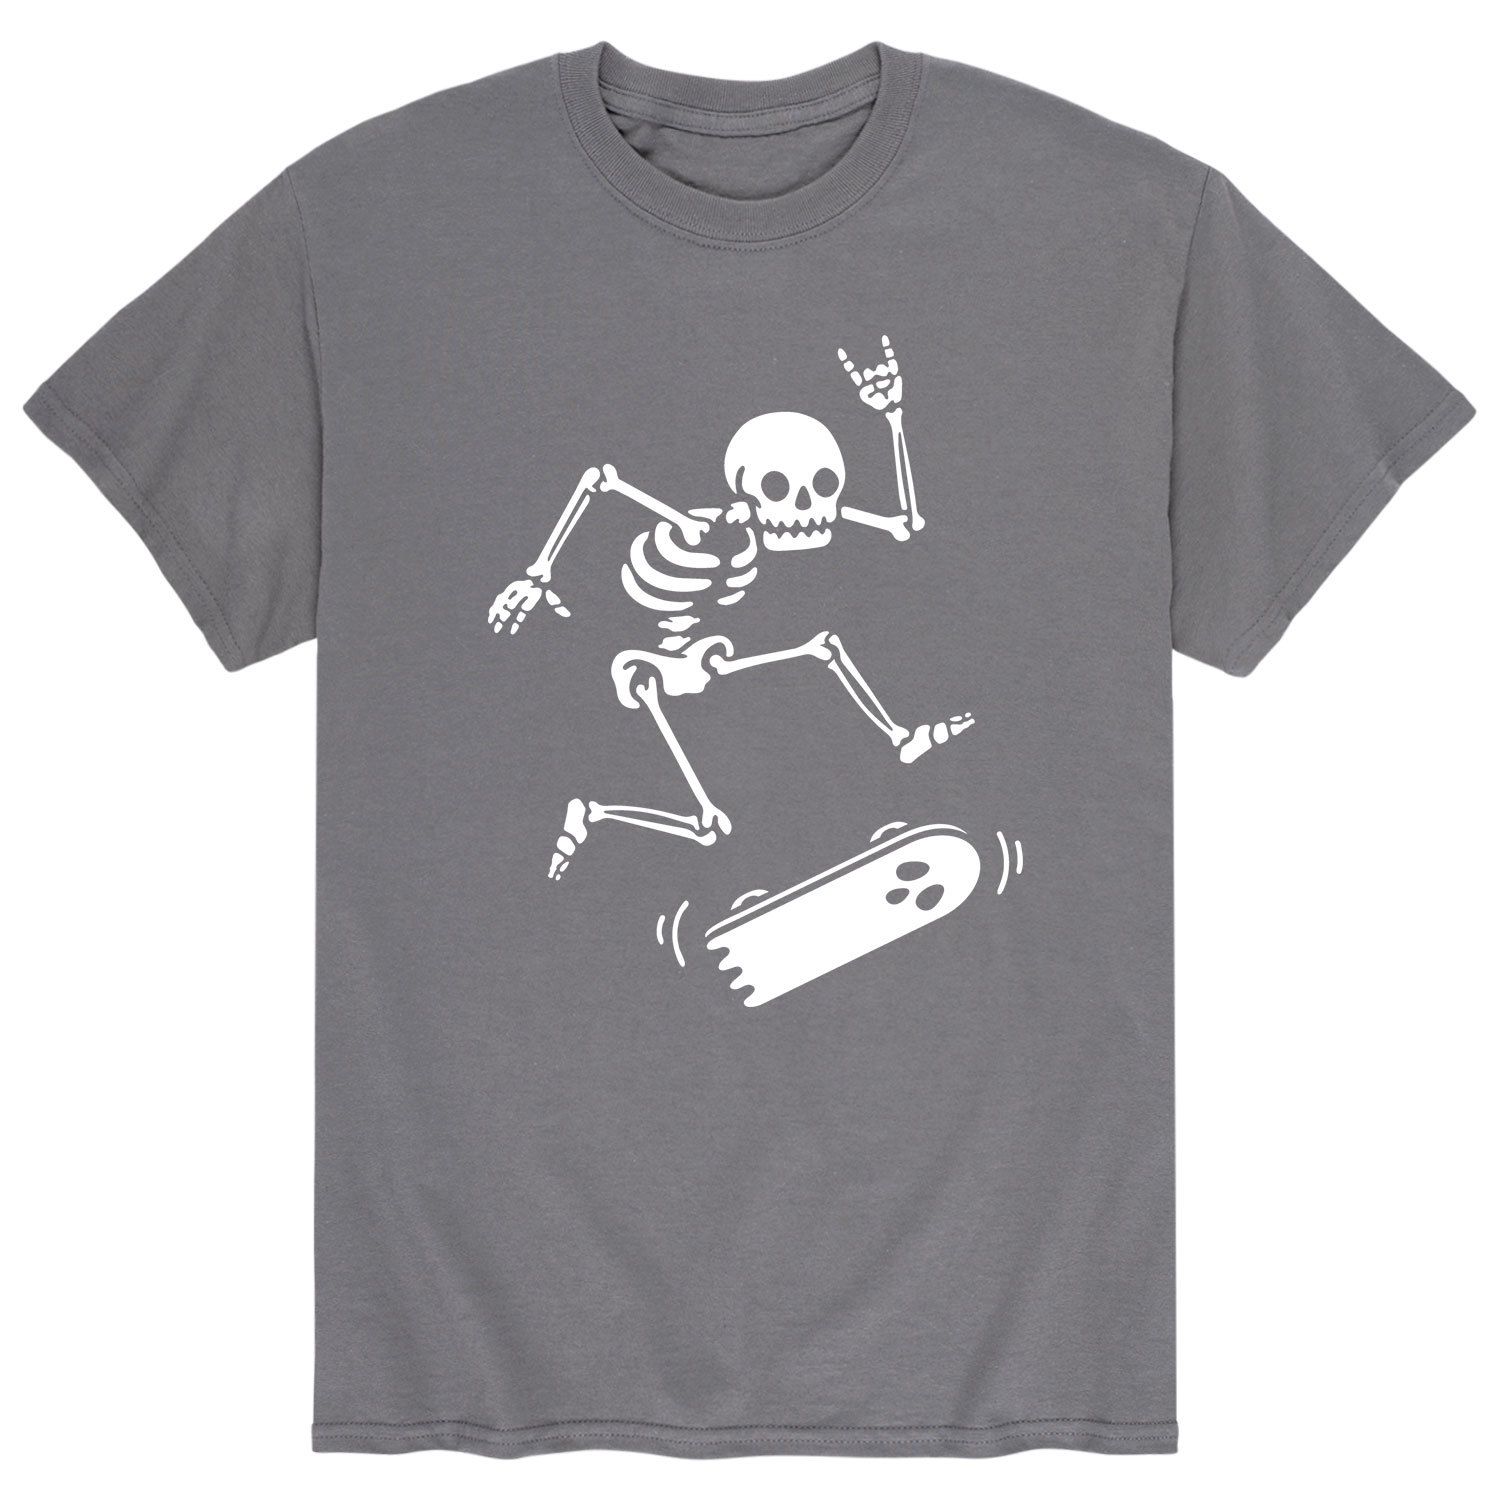 Мужская футболка со скелетом для скейтбординга Licensed Character мужская футболка death before decaf с неоновым скелетом licensed character